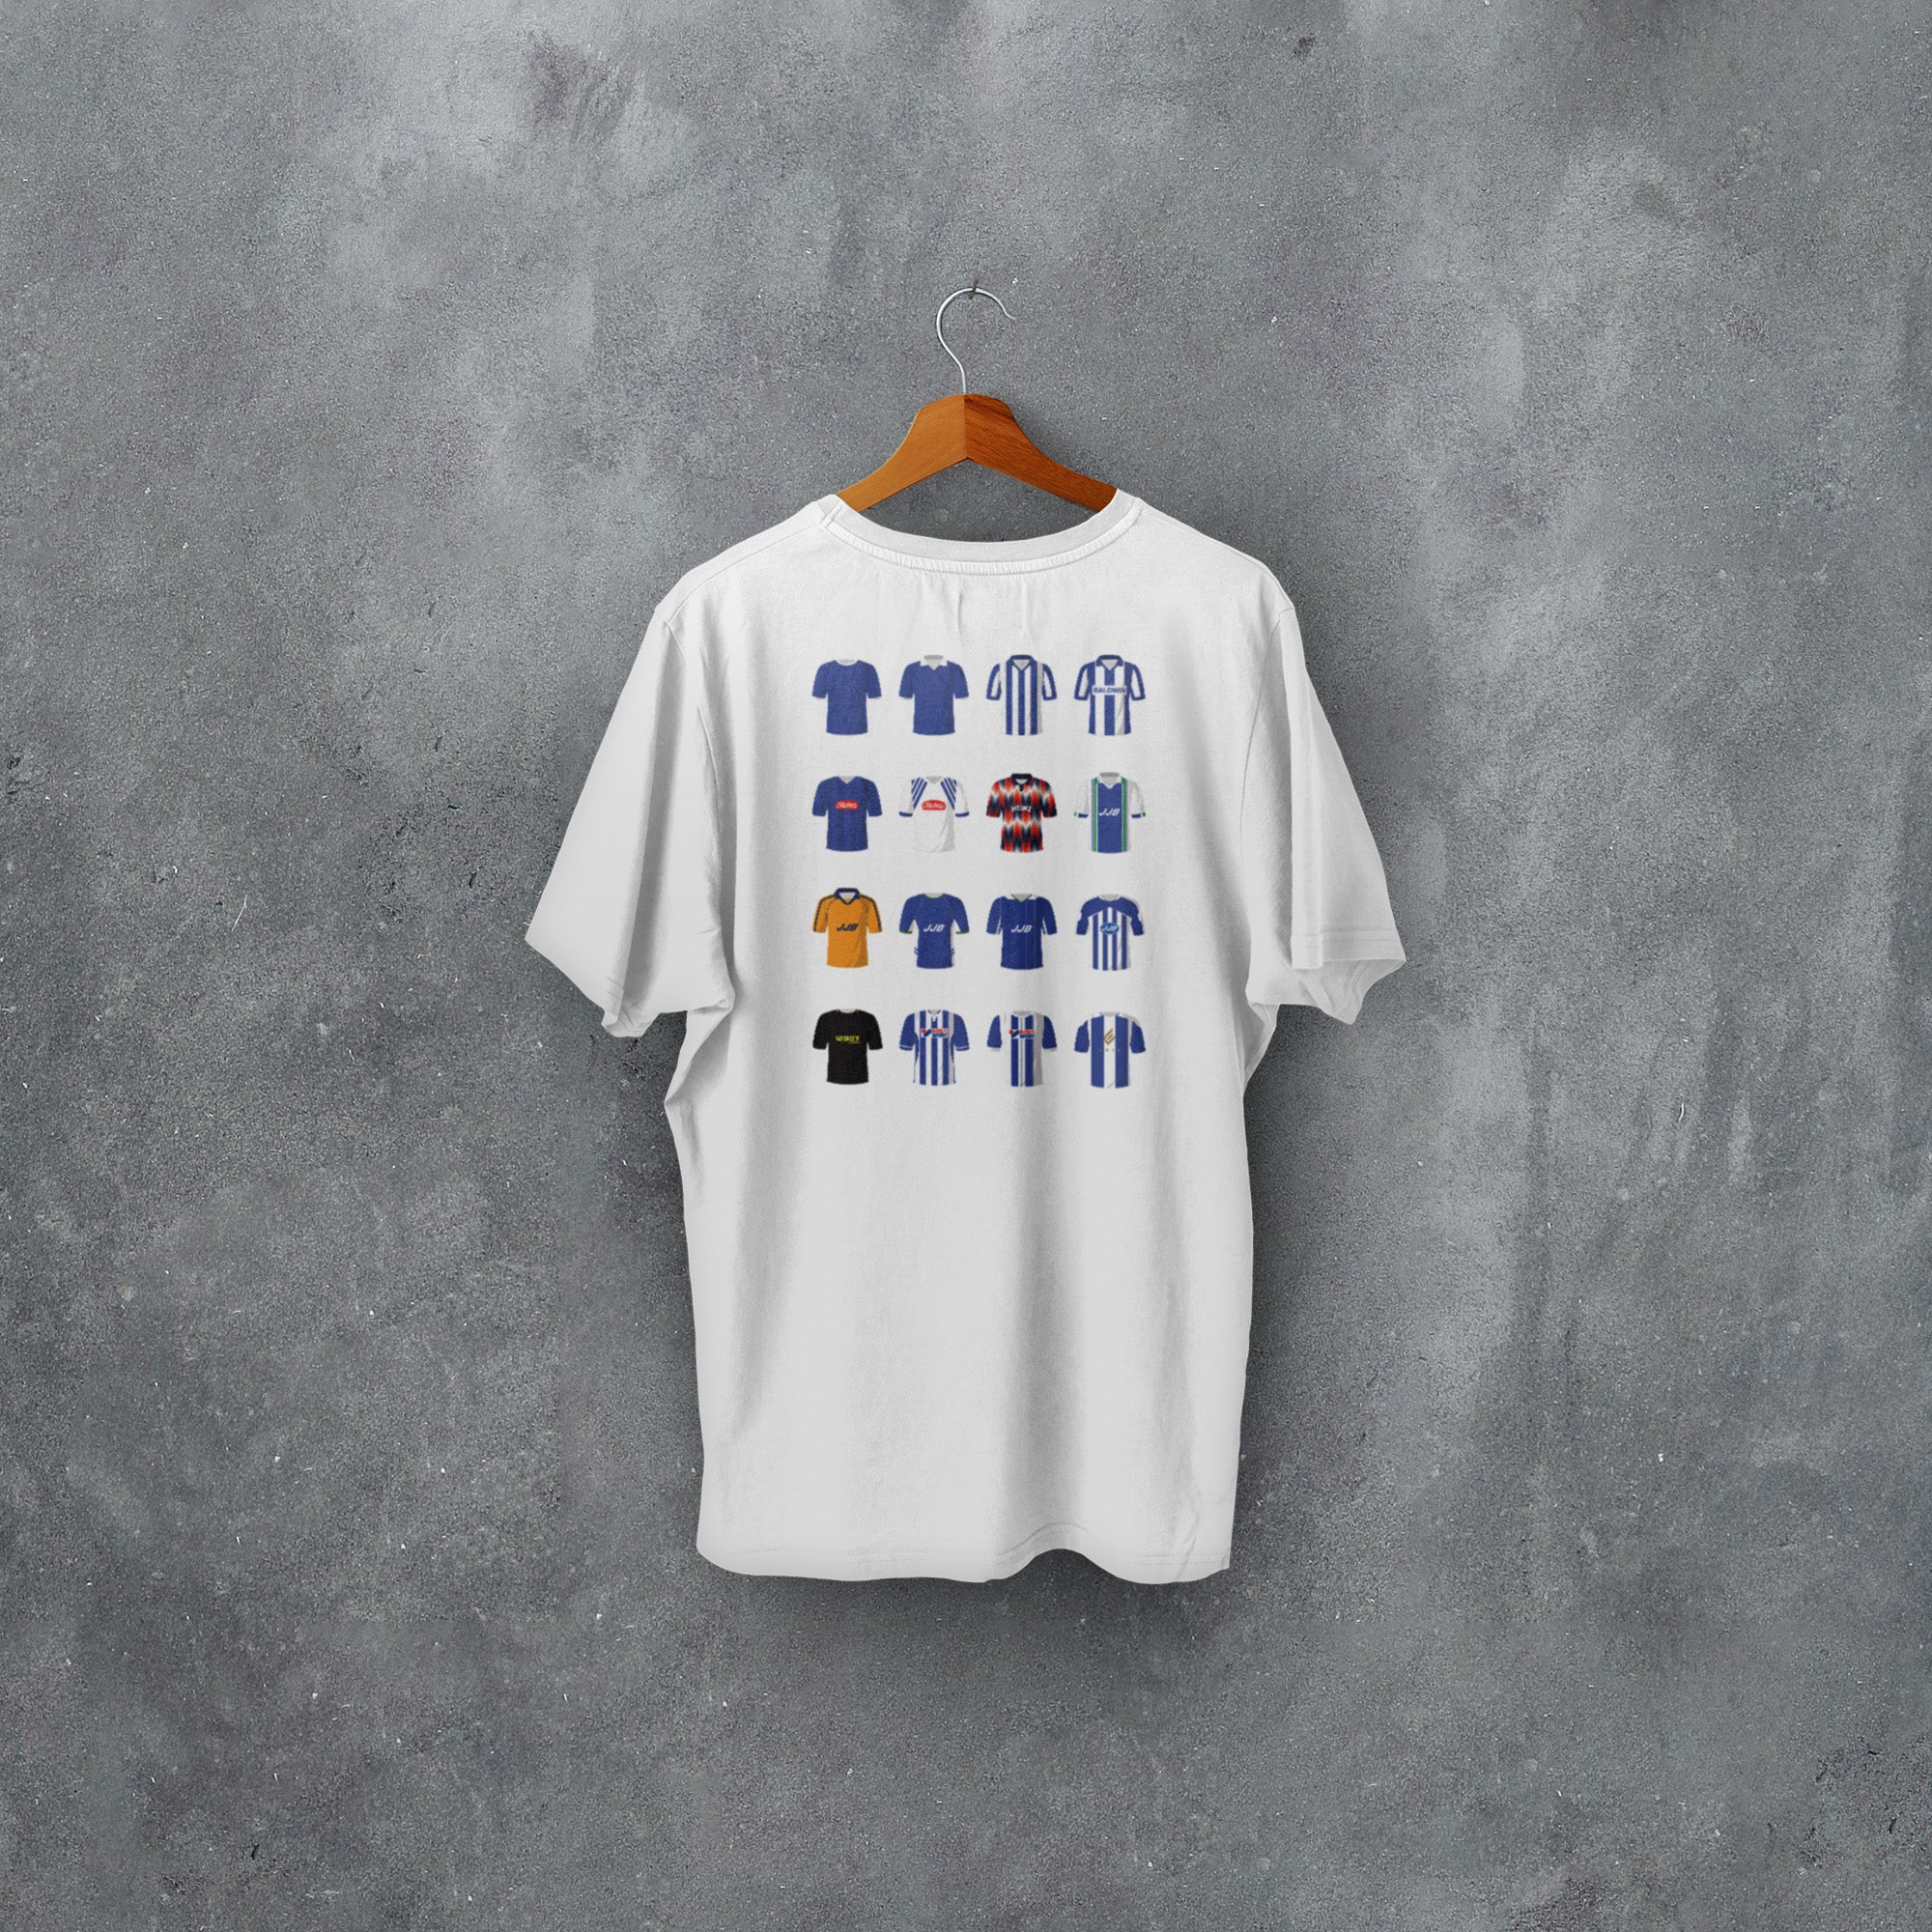 Wigan Classic Kits Football T-Shirt